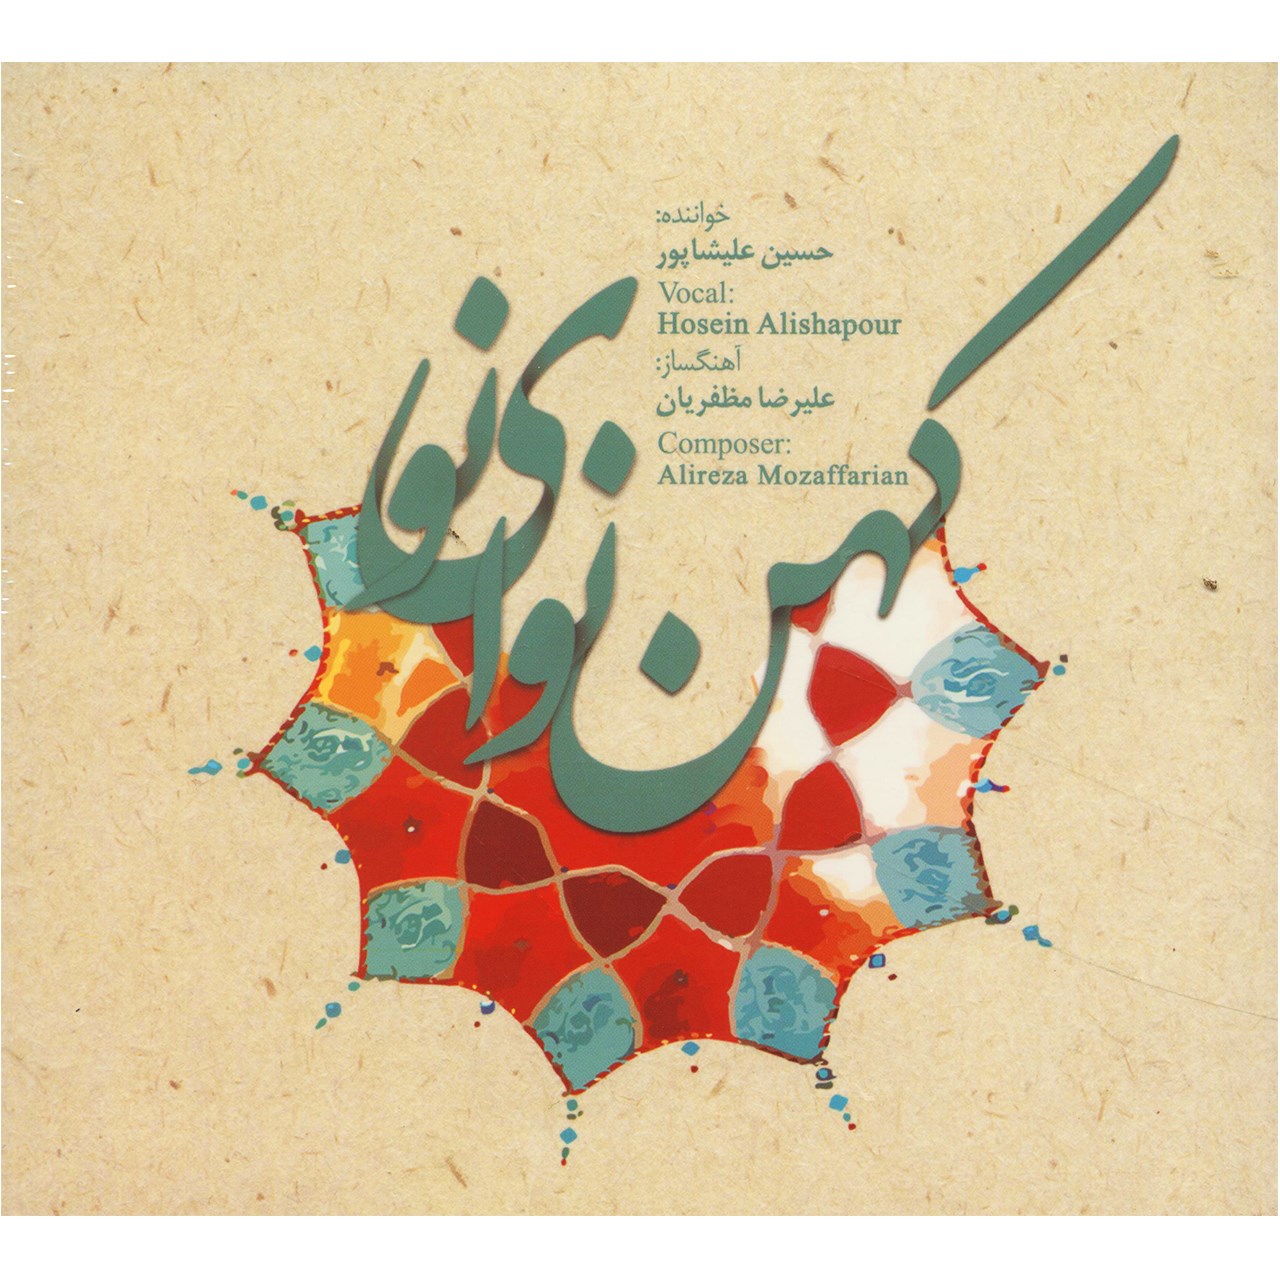 آلبوم موسیقی کهن نوای نو اثر حسین علیشاپور